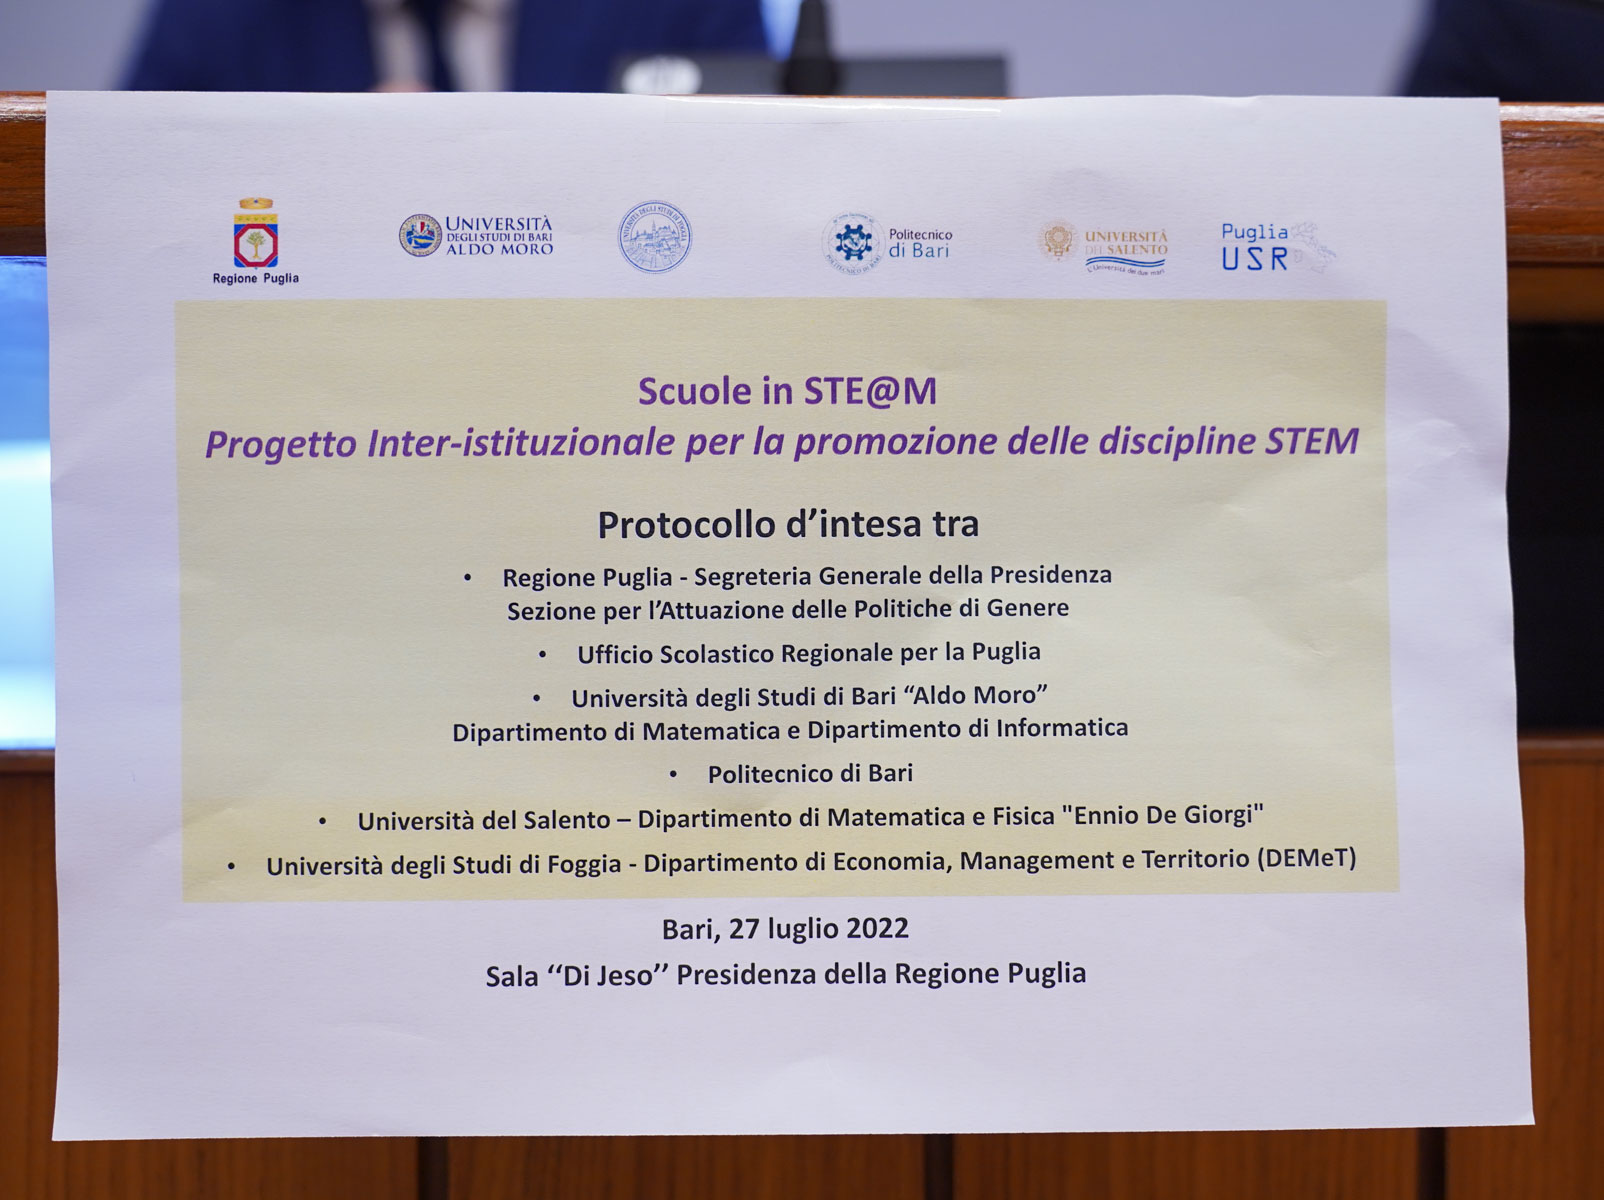 Galleria Materie tecnico scientifiche e parità di genere: siglato il Protocollo Scuole in STE@M adottato dalla Regione Puglia - Diapositiva 4 di 12